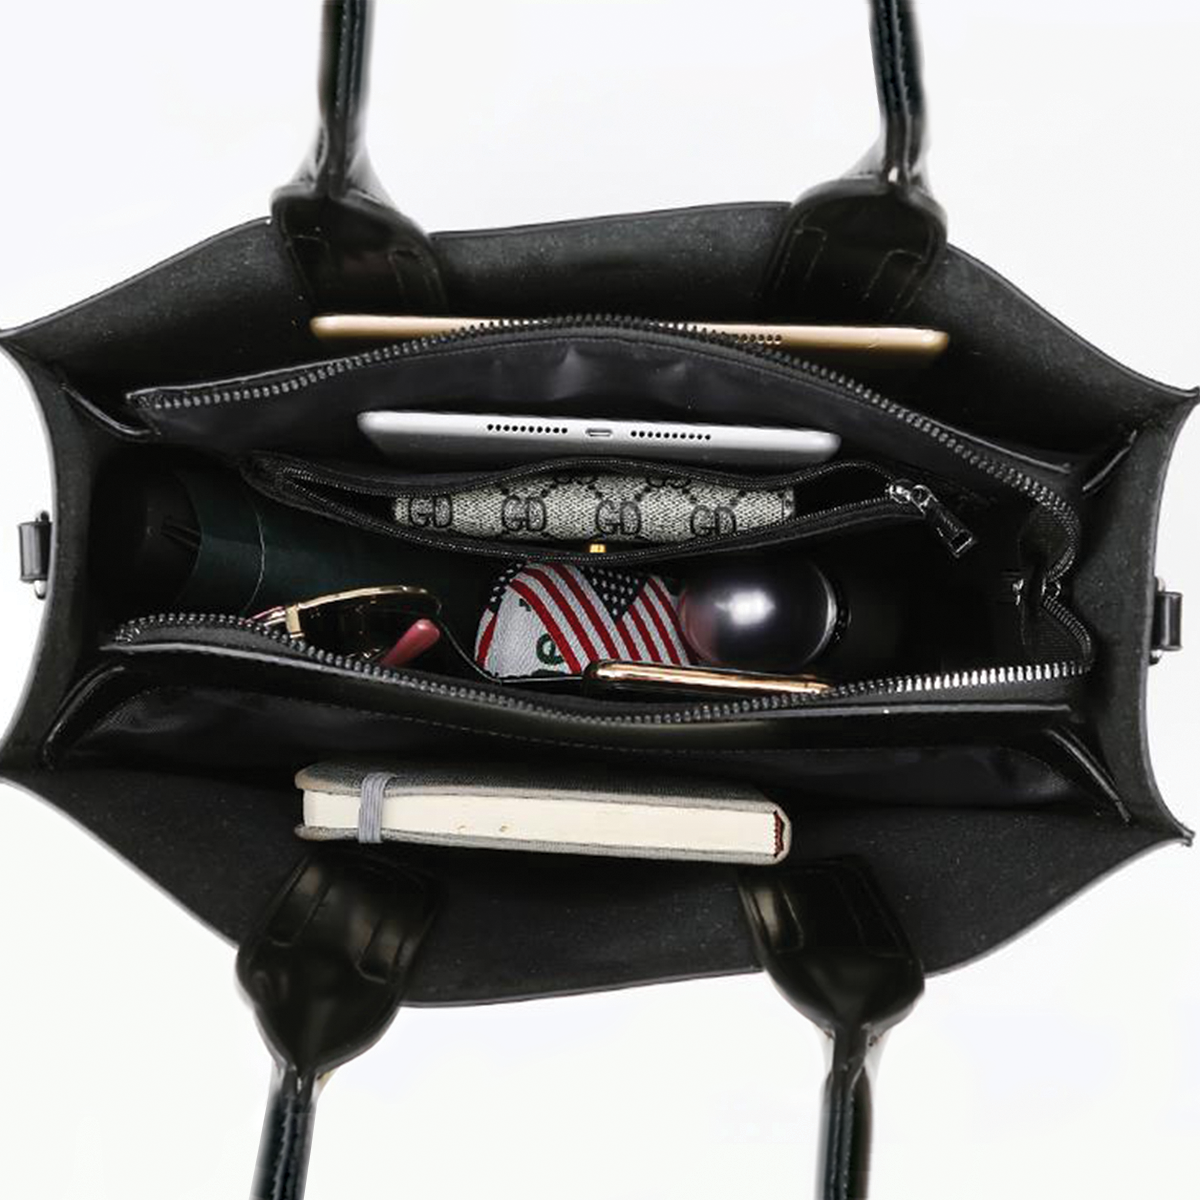 Chihuahua Luxury Handbag V7